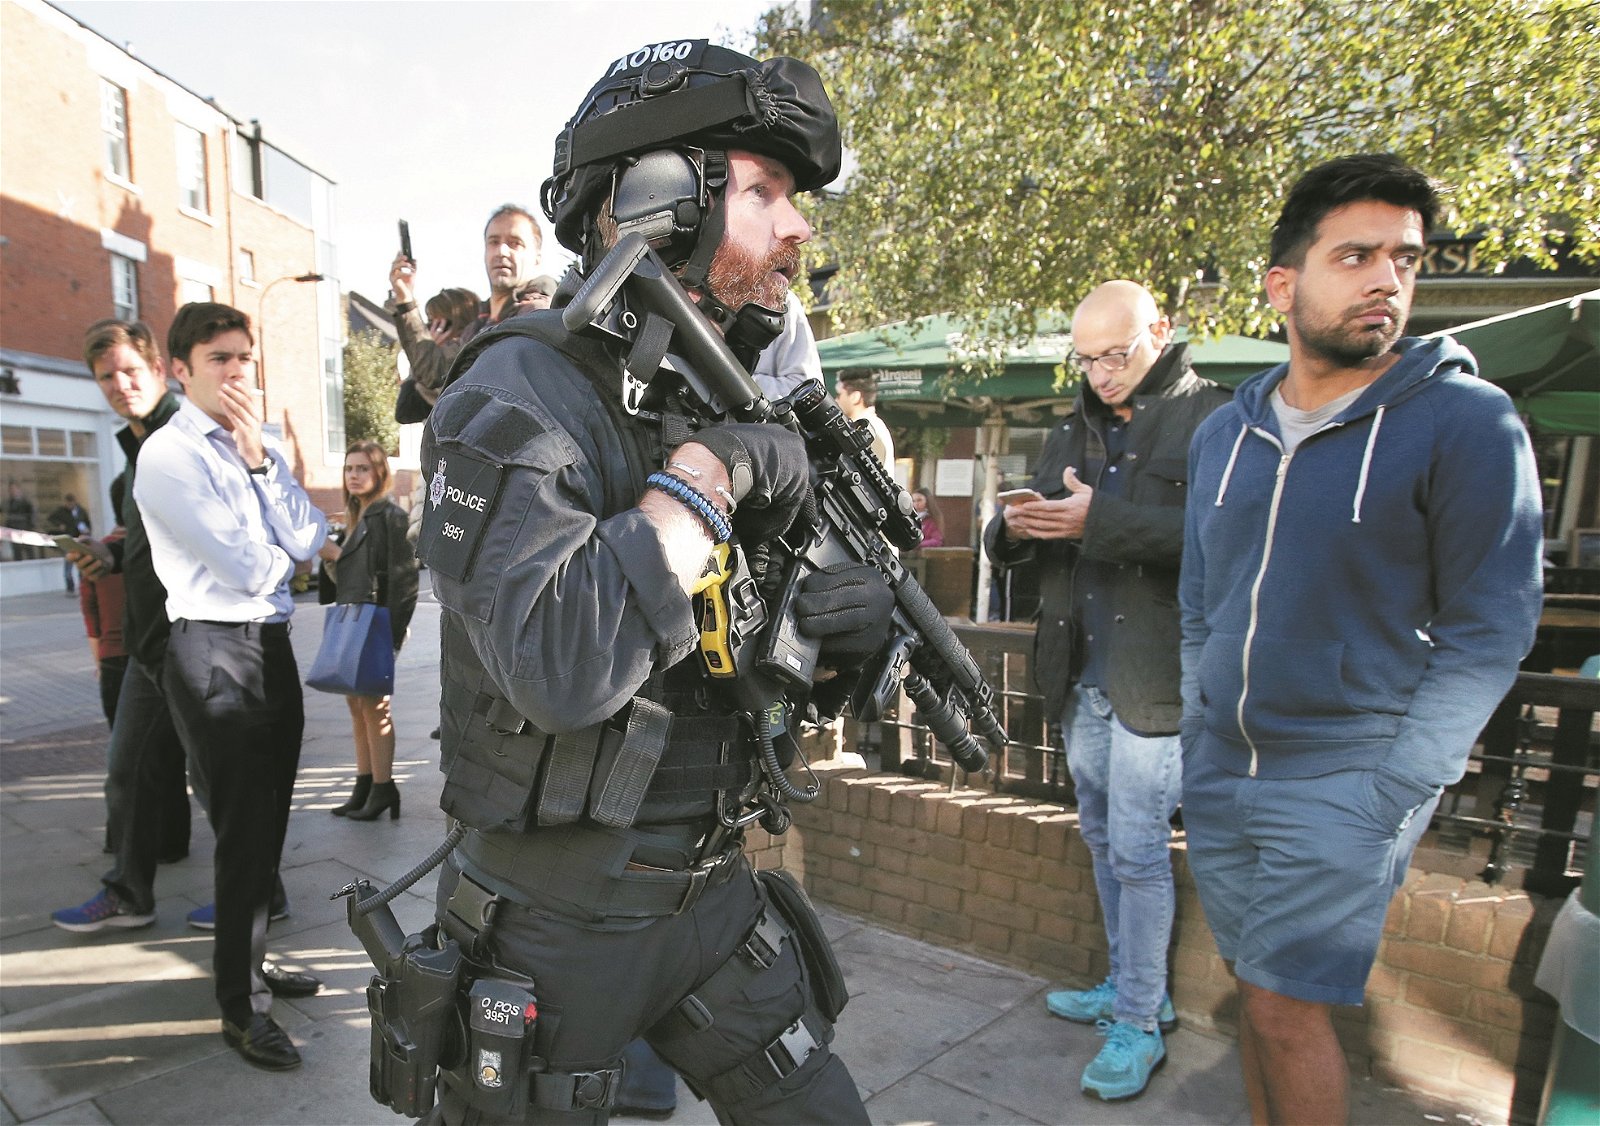 持枪警员在地铁站外巡逻。随著英国提高反恐级别，接下来的日子将有更多持枪警员，在街道及公共交通设施执勤。